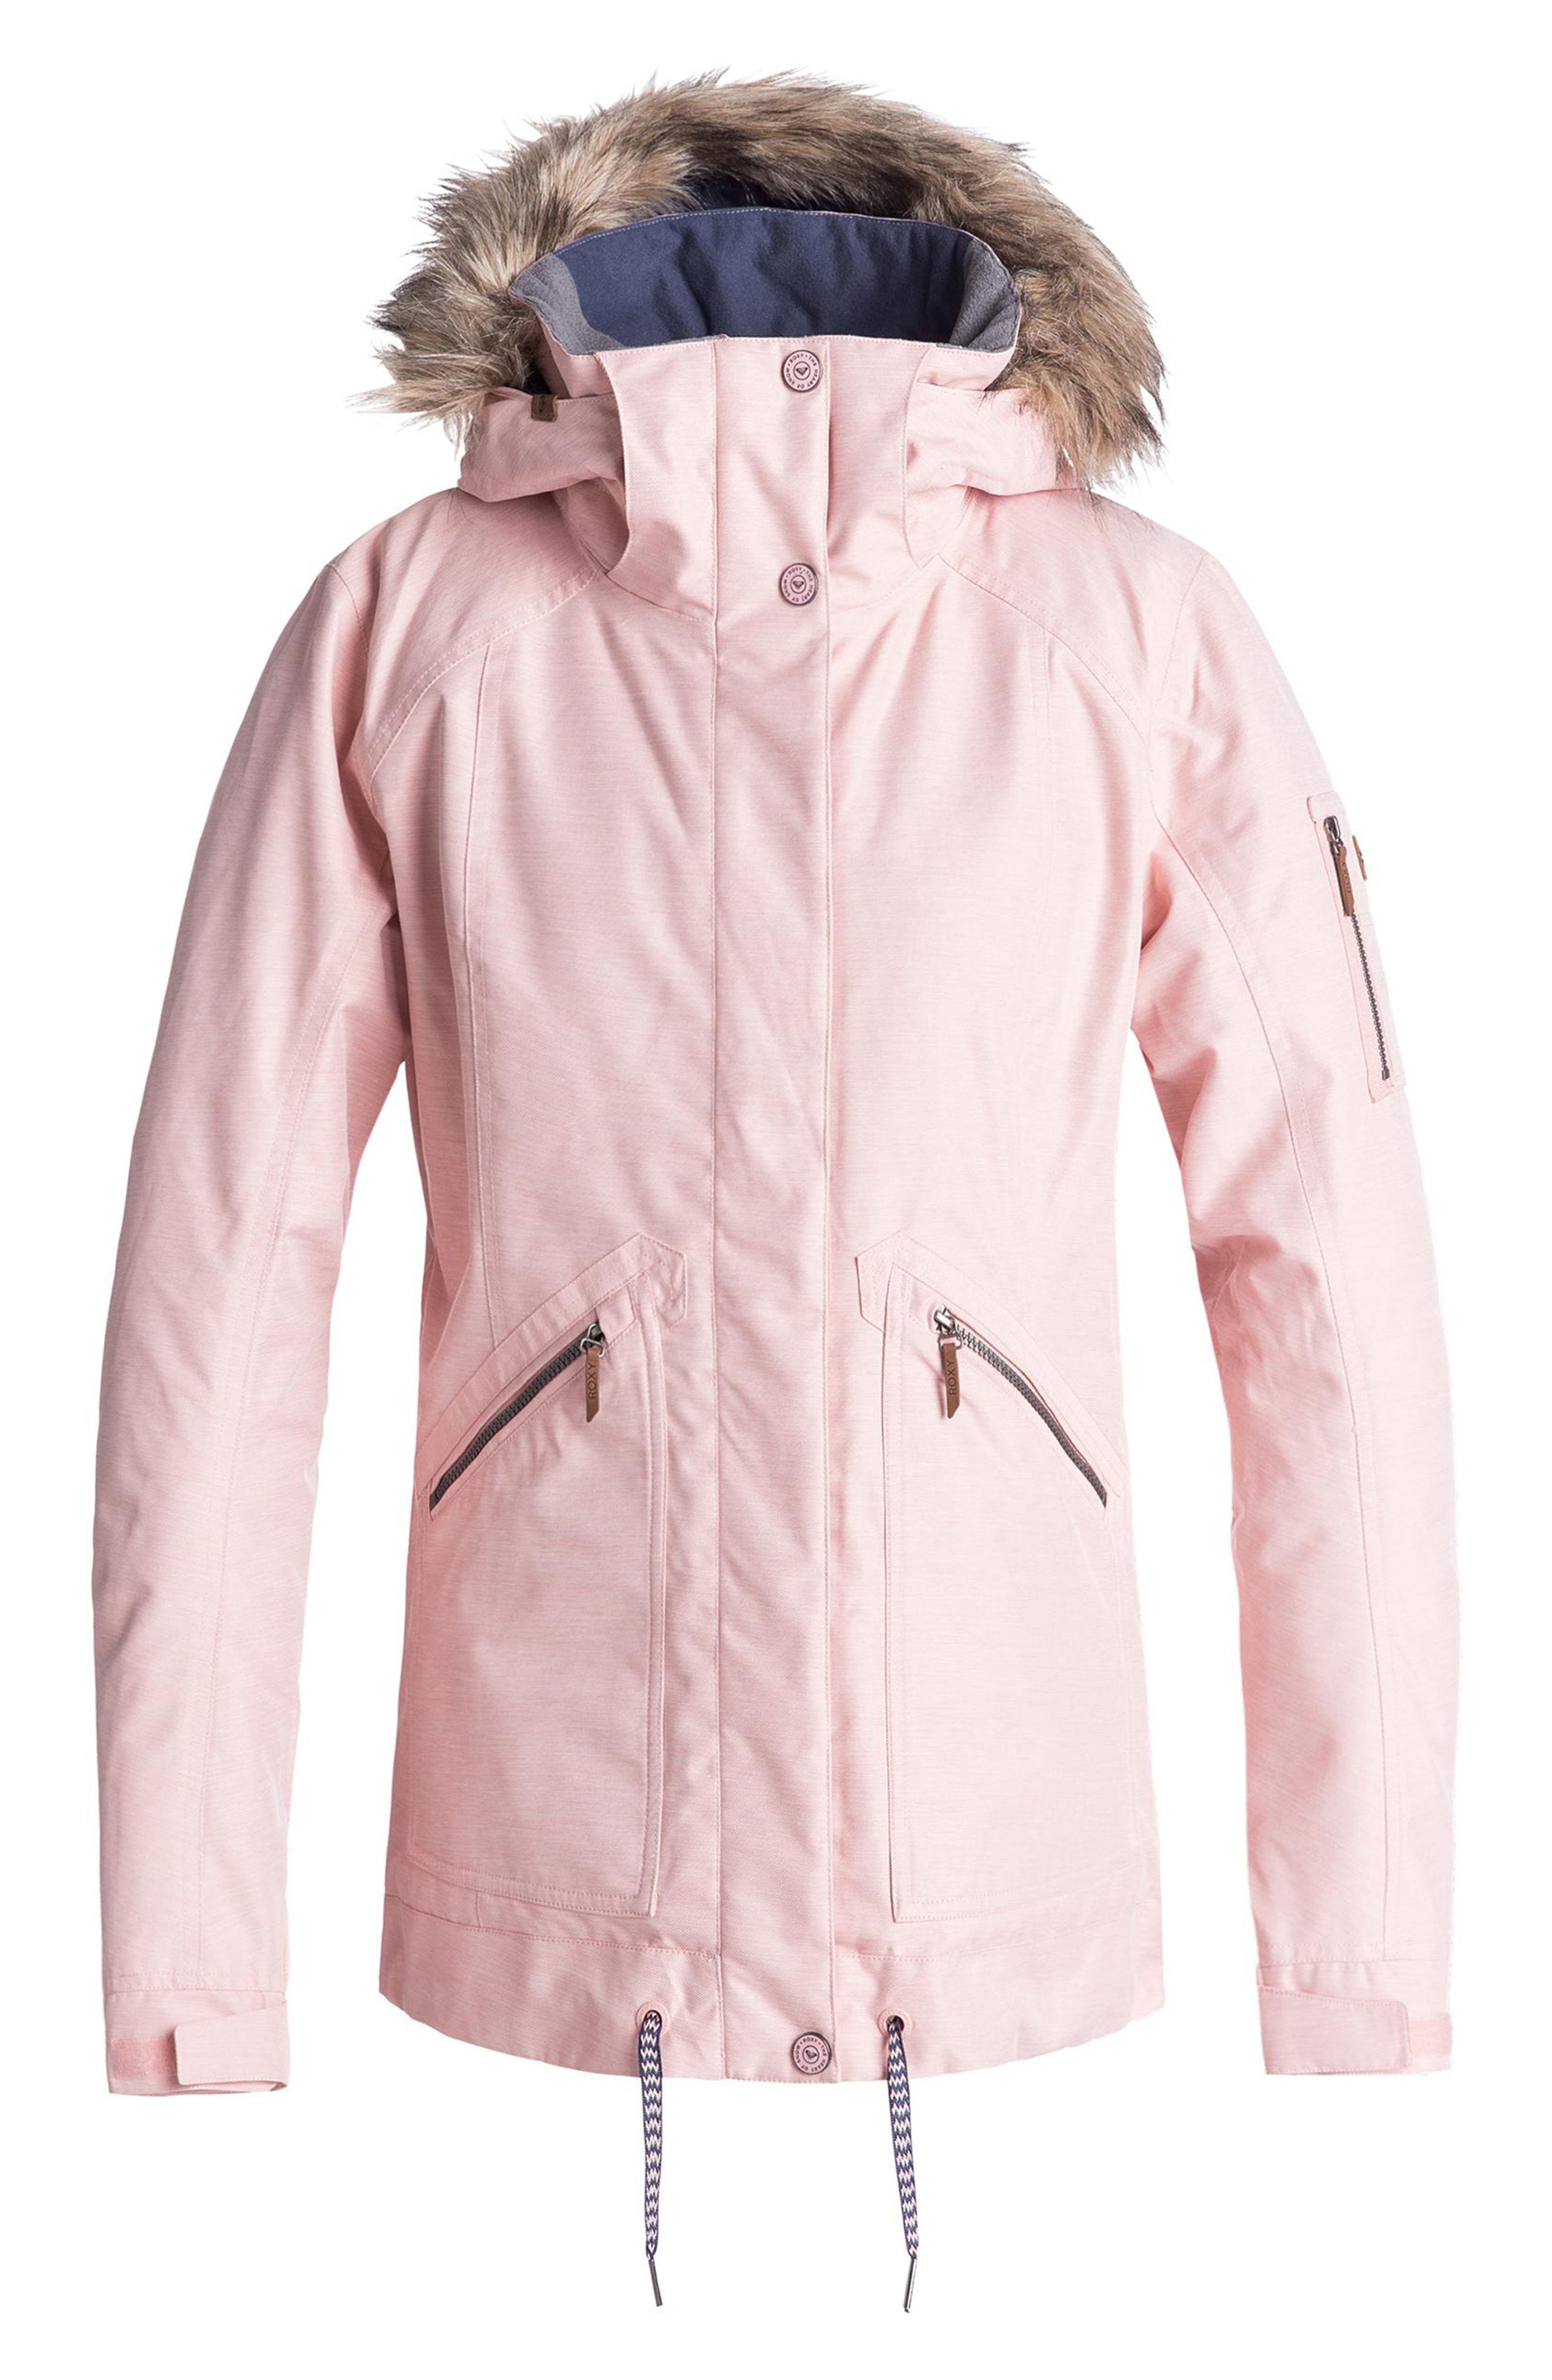 Roxy куртка розовая. Женская сноубордическая куртка Roxy Meade. Куртка Roxy Dry Flight 10k голубая. Roxy куртка сноубордическая розовая. Куртка для сноуборда Roxy женская Dry Fly 10k.